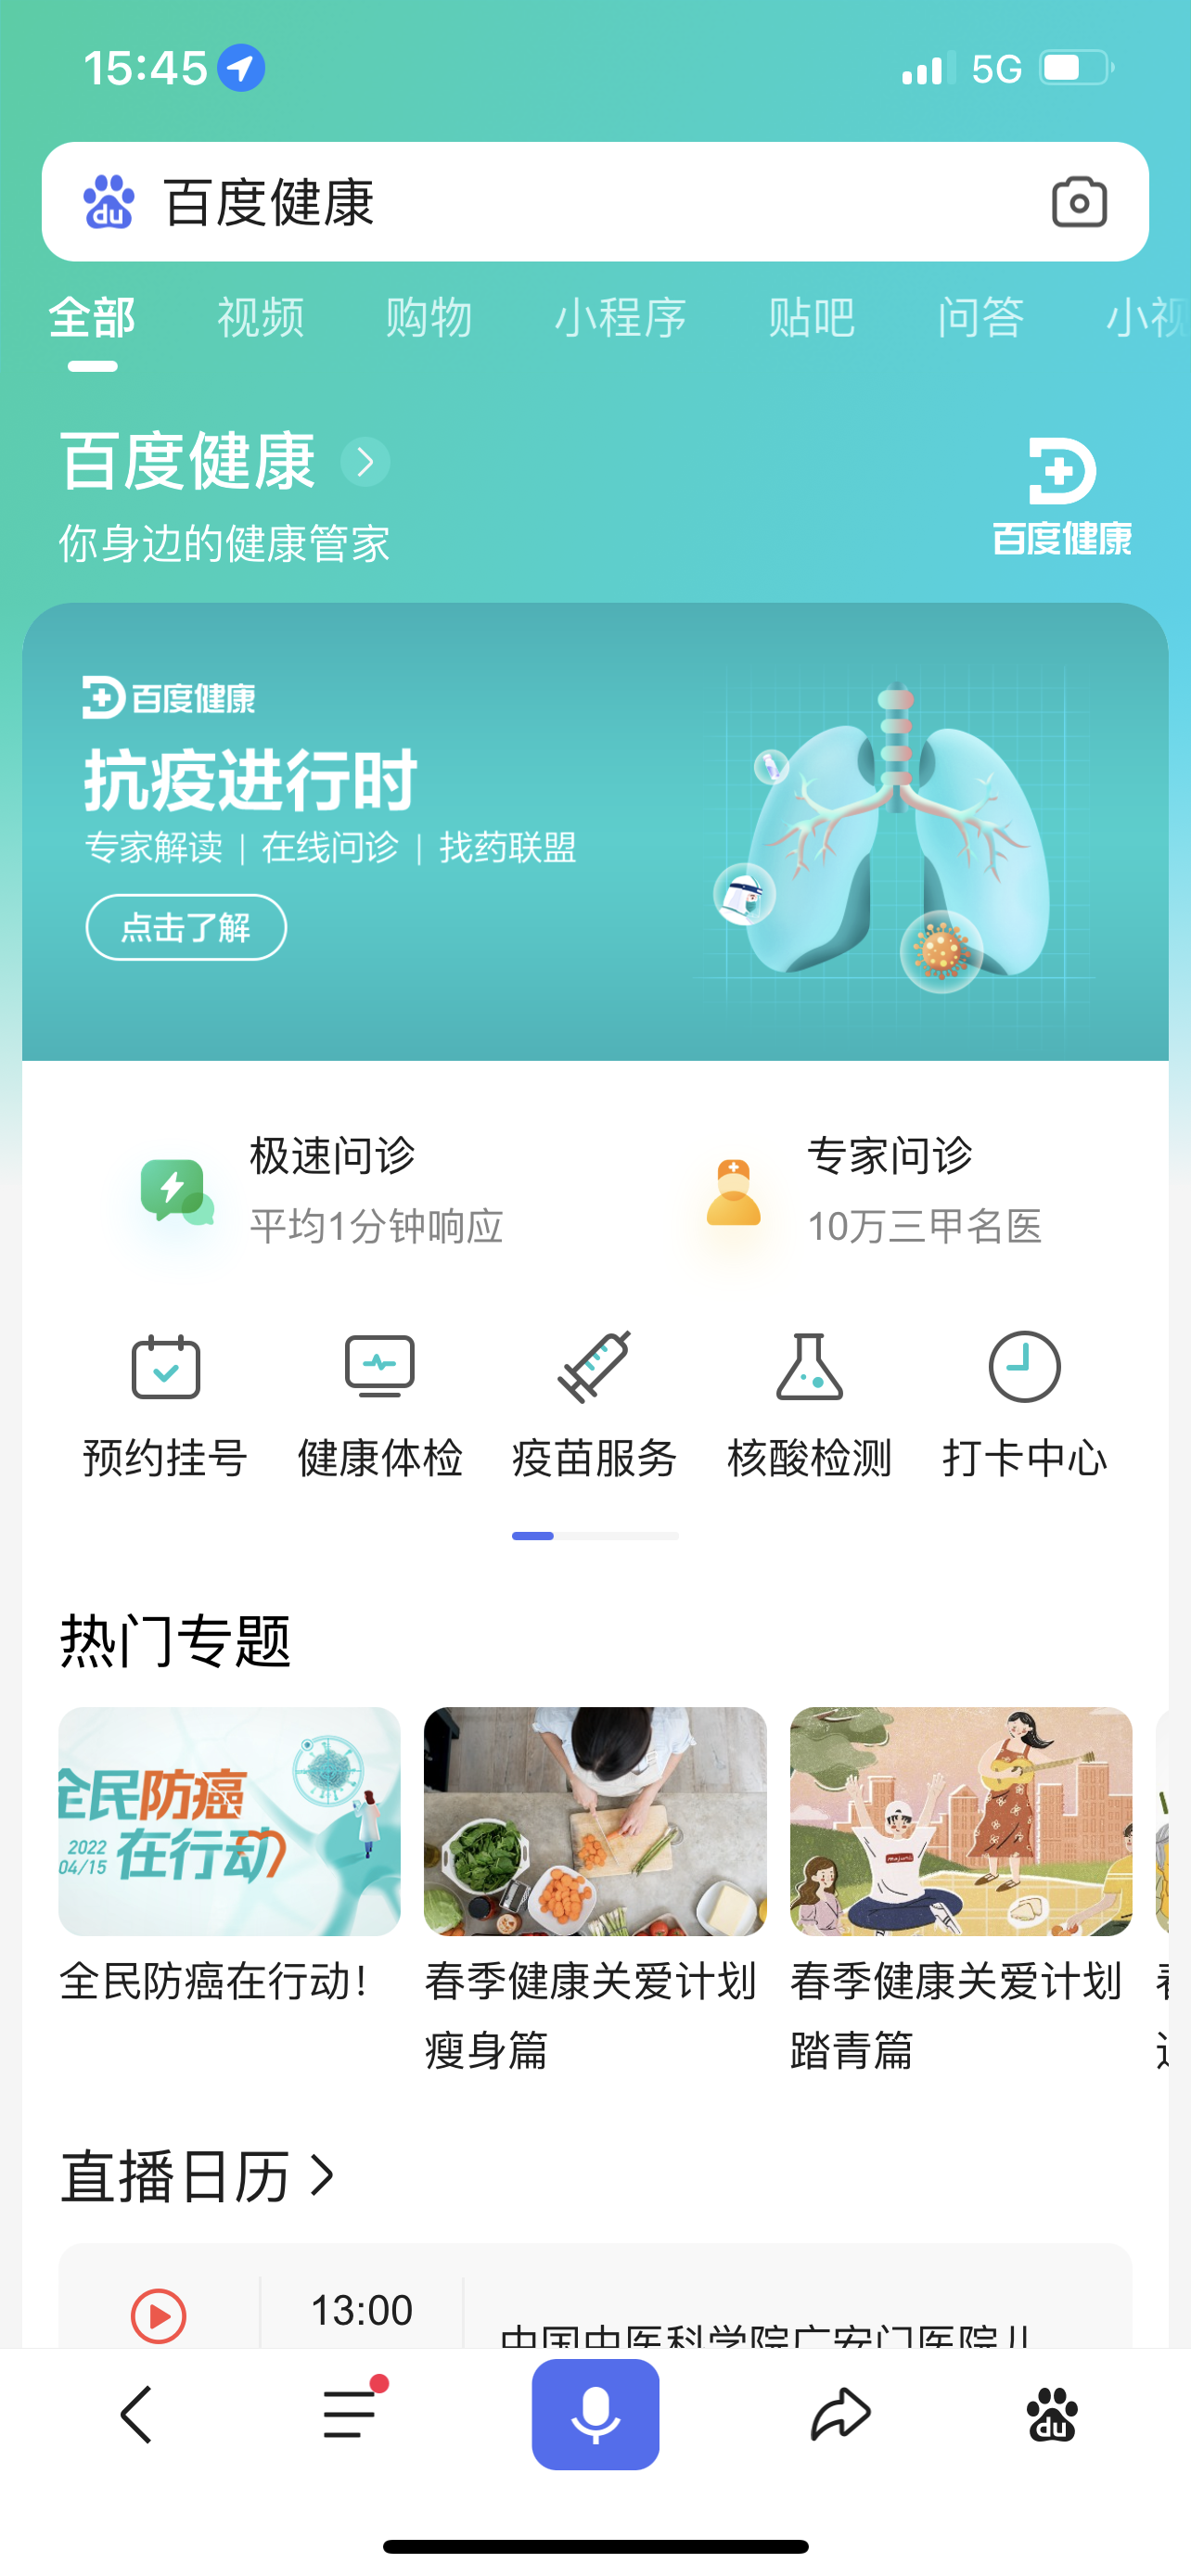 百度健康升级疫情服务平台 北京用户可免费问诊